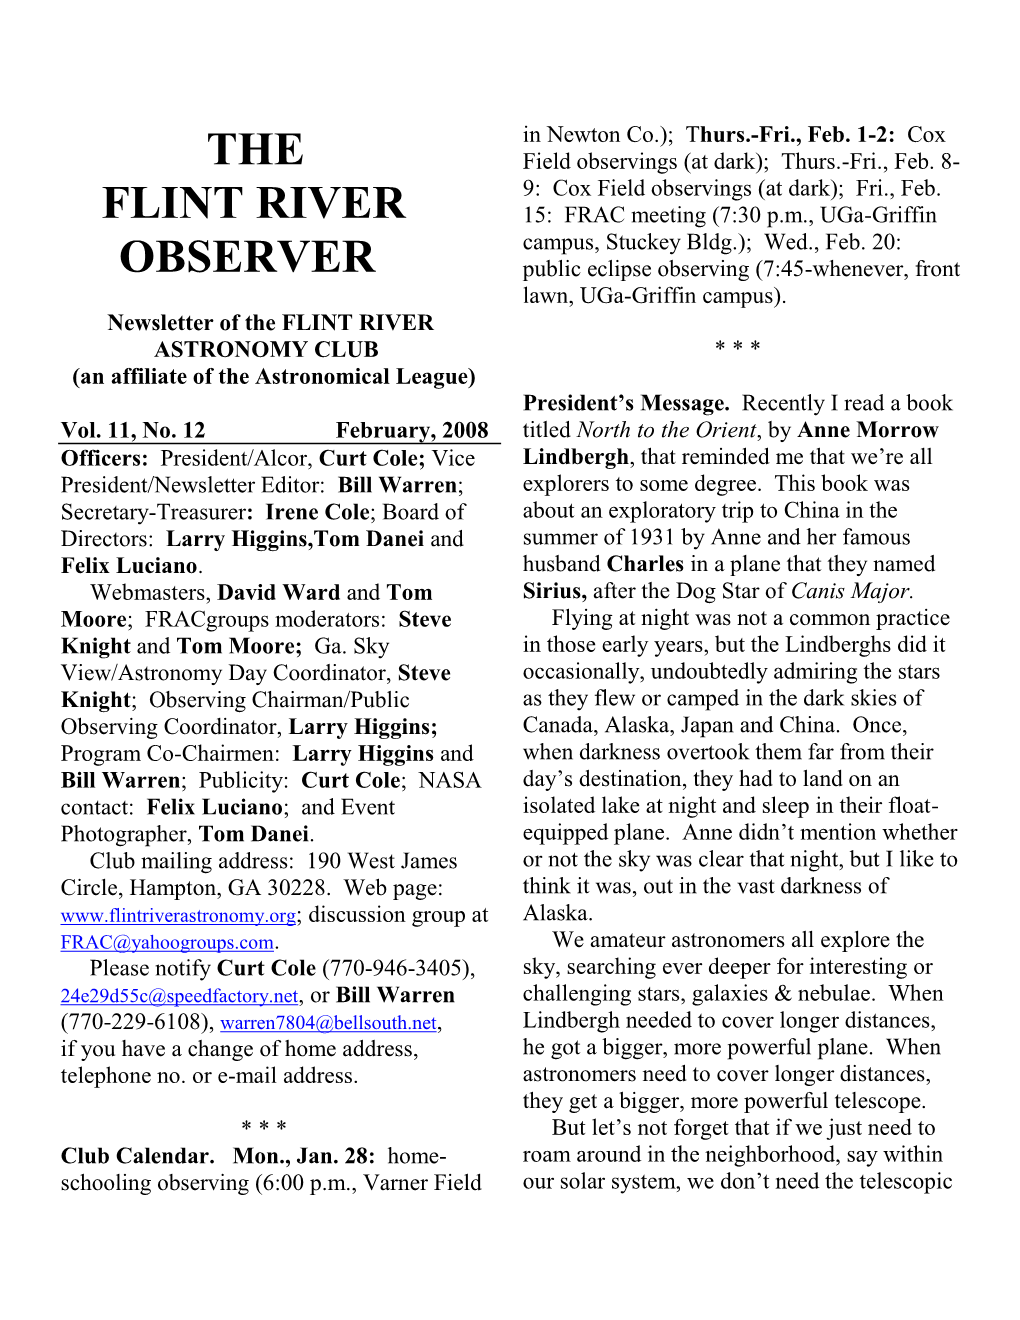 The Flint River Observer